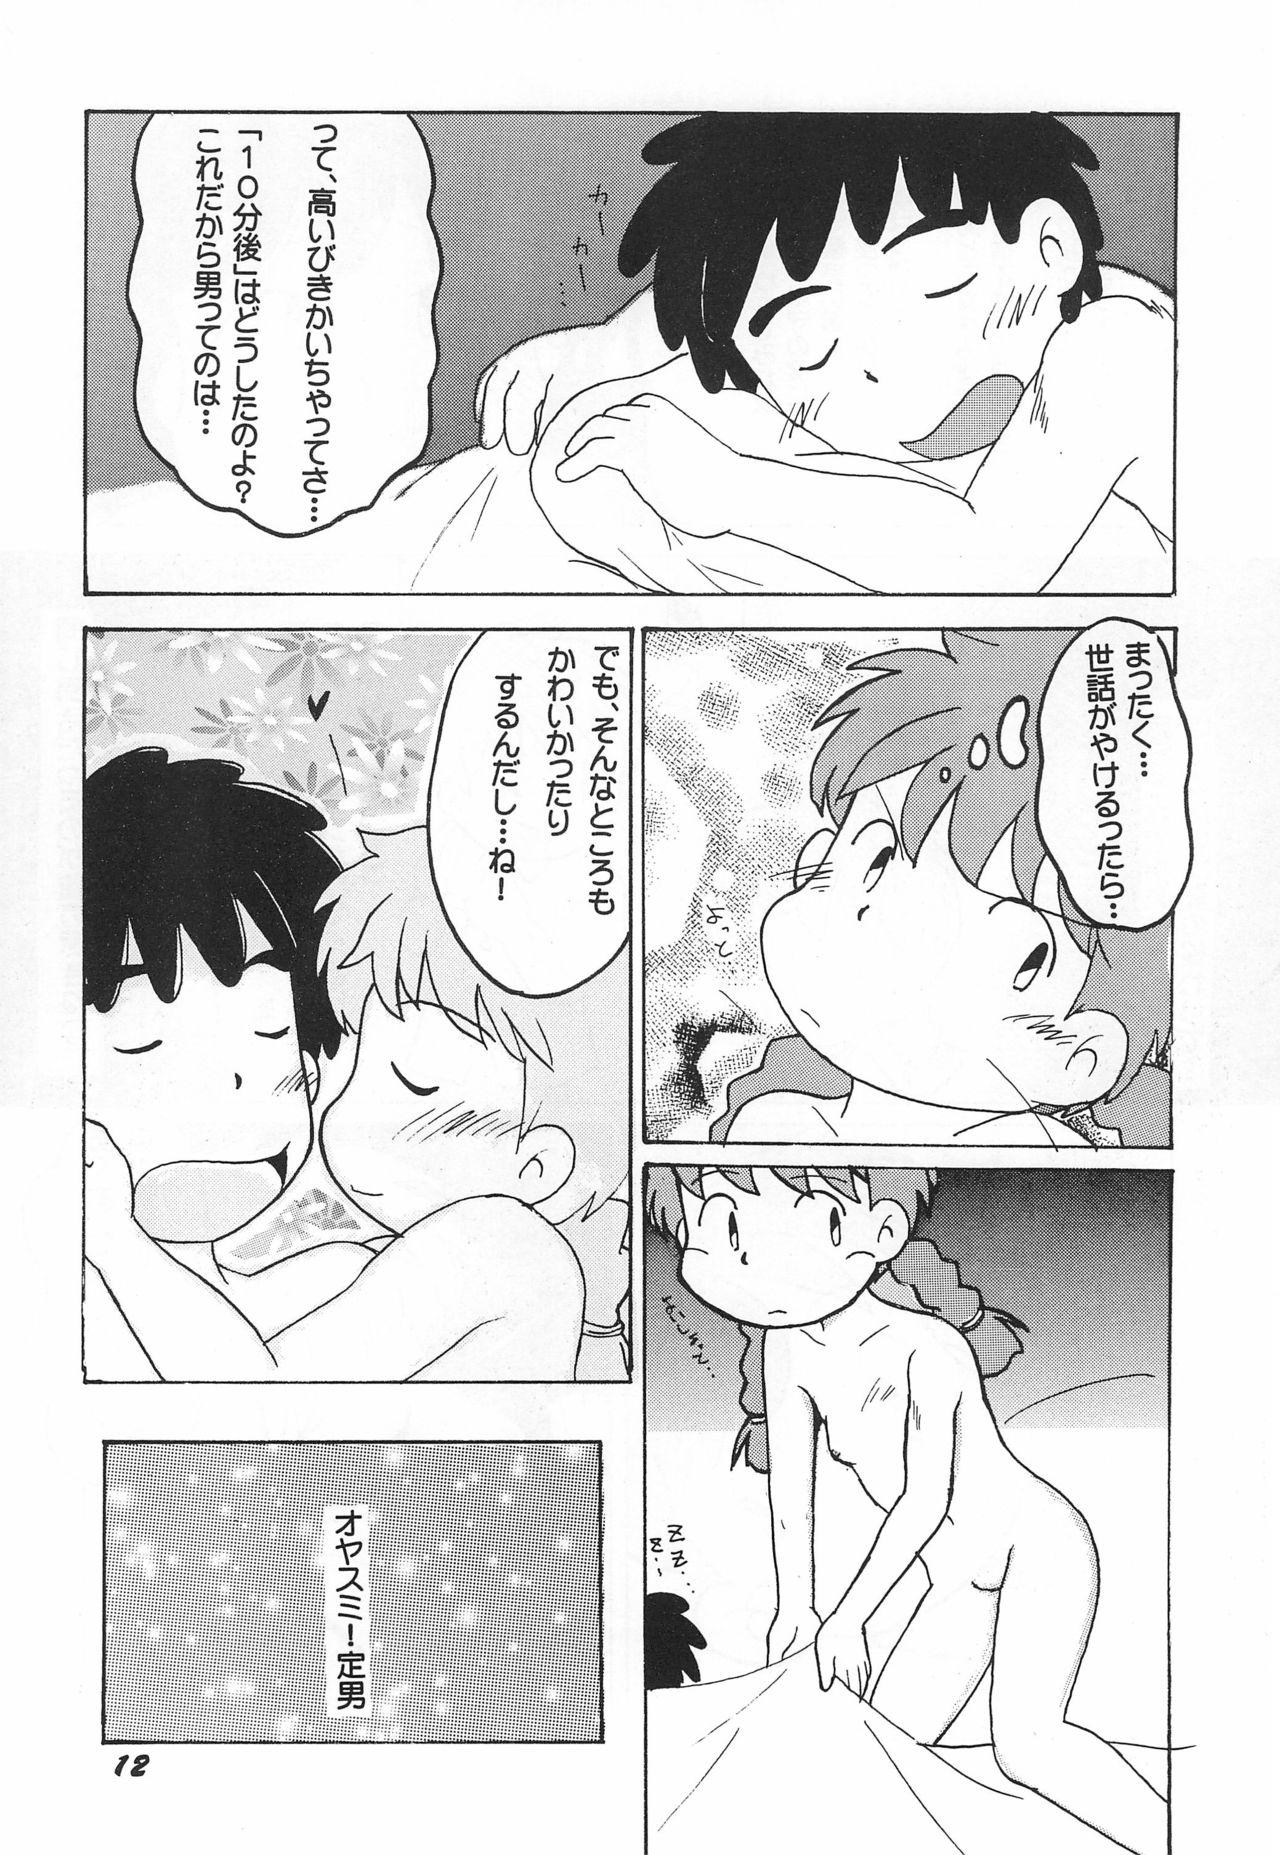 Massage Creep Dame moto de Yatte miru tte no mo Kono Sai ari kana? - Azuki-chan Muscle - Page 13